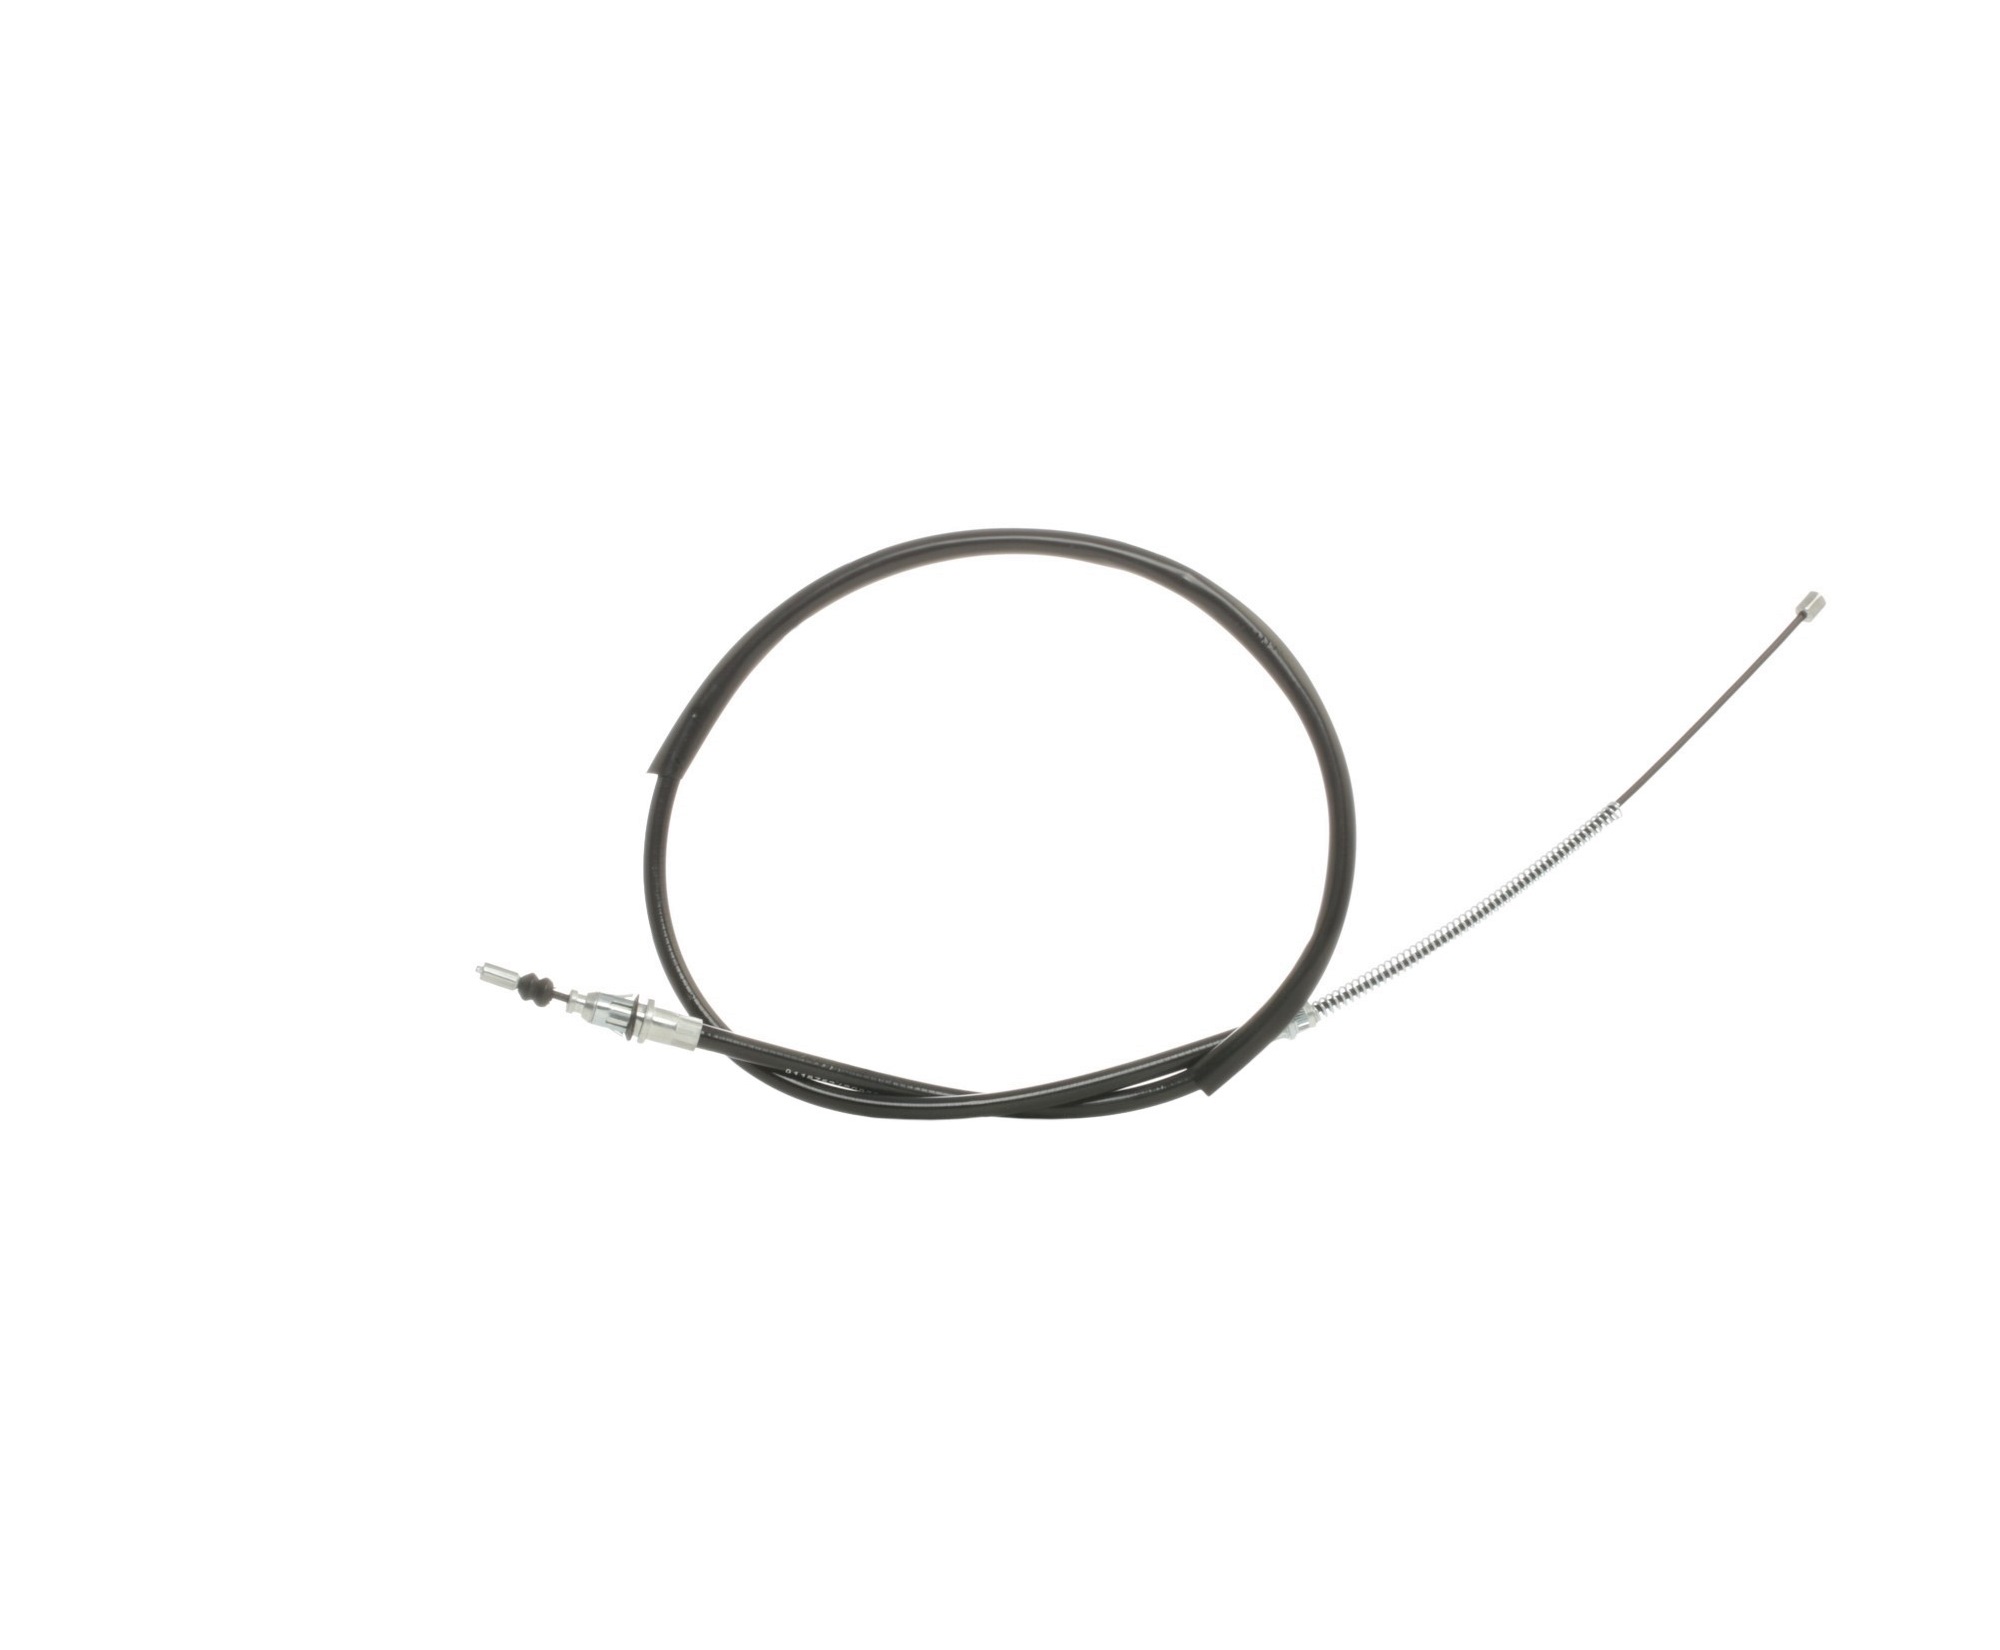 STARK SKCPB-1050037 Hand brake cable Left Rear, Right Rear, 1420/1048mm, Disc/Drum, Drum Brake